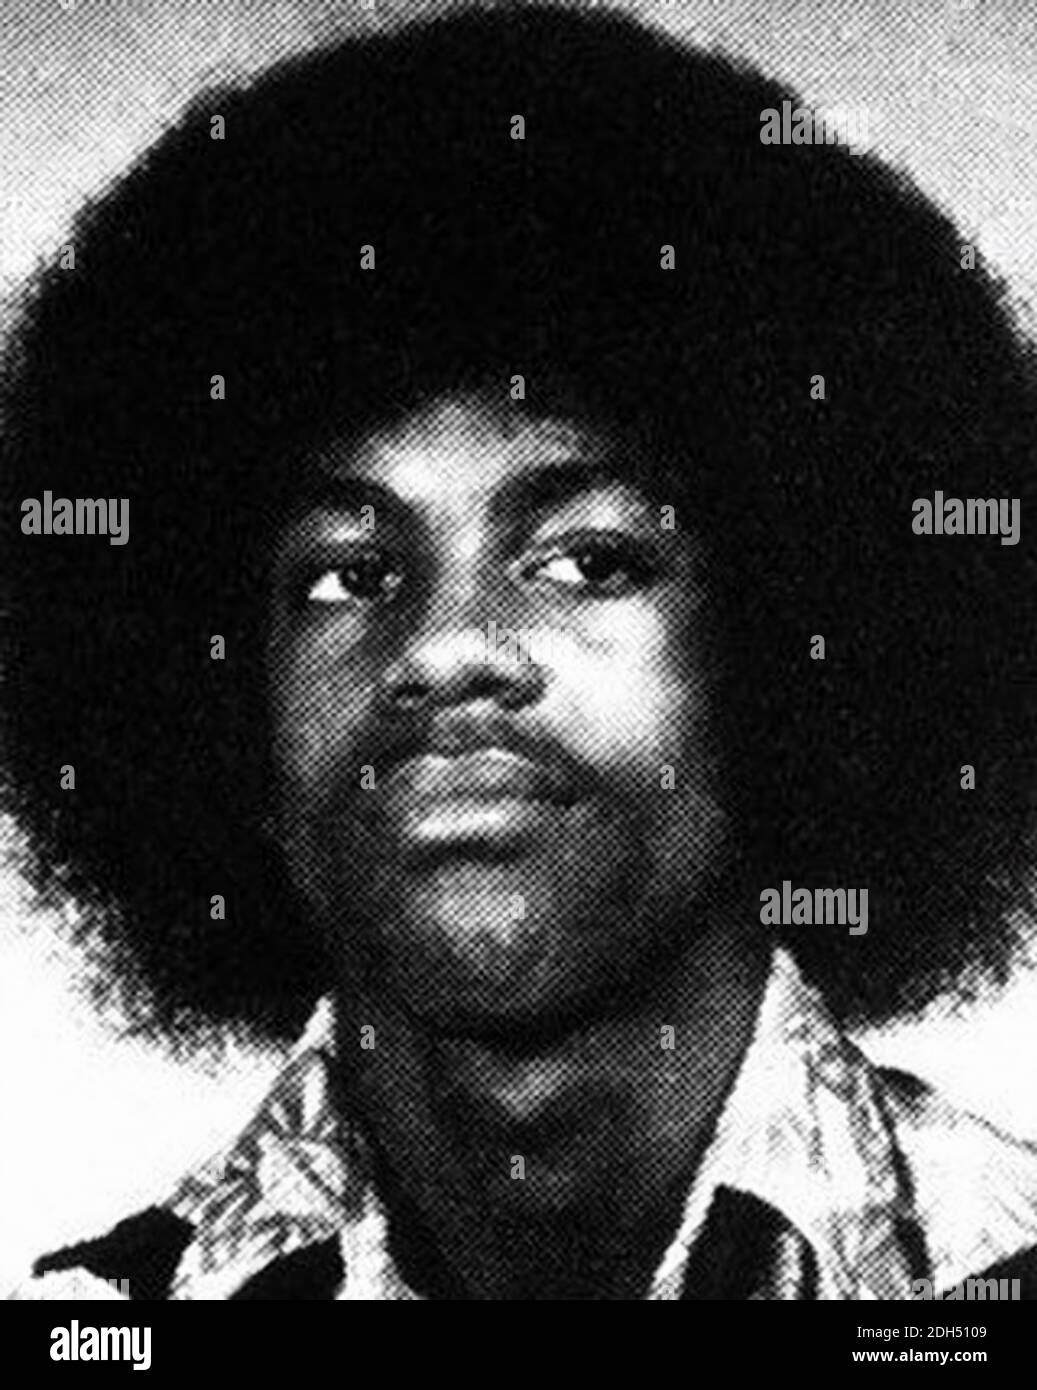 1975 ca, Minneapolis , USA : il celebre cantante e compositore americano Funky Rock Star PRINCE ( 1958 - 2016 ), nato Prince Rogers Nelson , quando era un ragazzo di 17 anni in School Yearbook . Fotografo sconosciuto. - STORIA - FOTO STORICHE - personalità da giovane - personalità quando era giovane - INFANTA - INFANZIA - musica POP - MUSICA - cantante - COMPOSITORE - ROCK STAR - chitarrista - chitarrista --- ARCHIVIO GBB Foto Stock